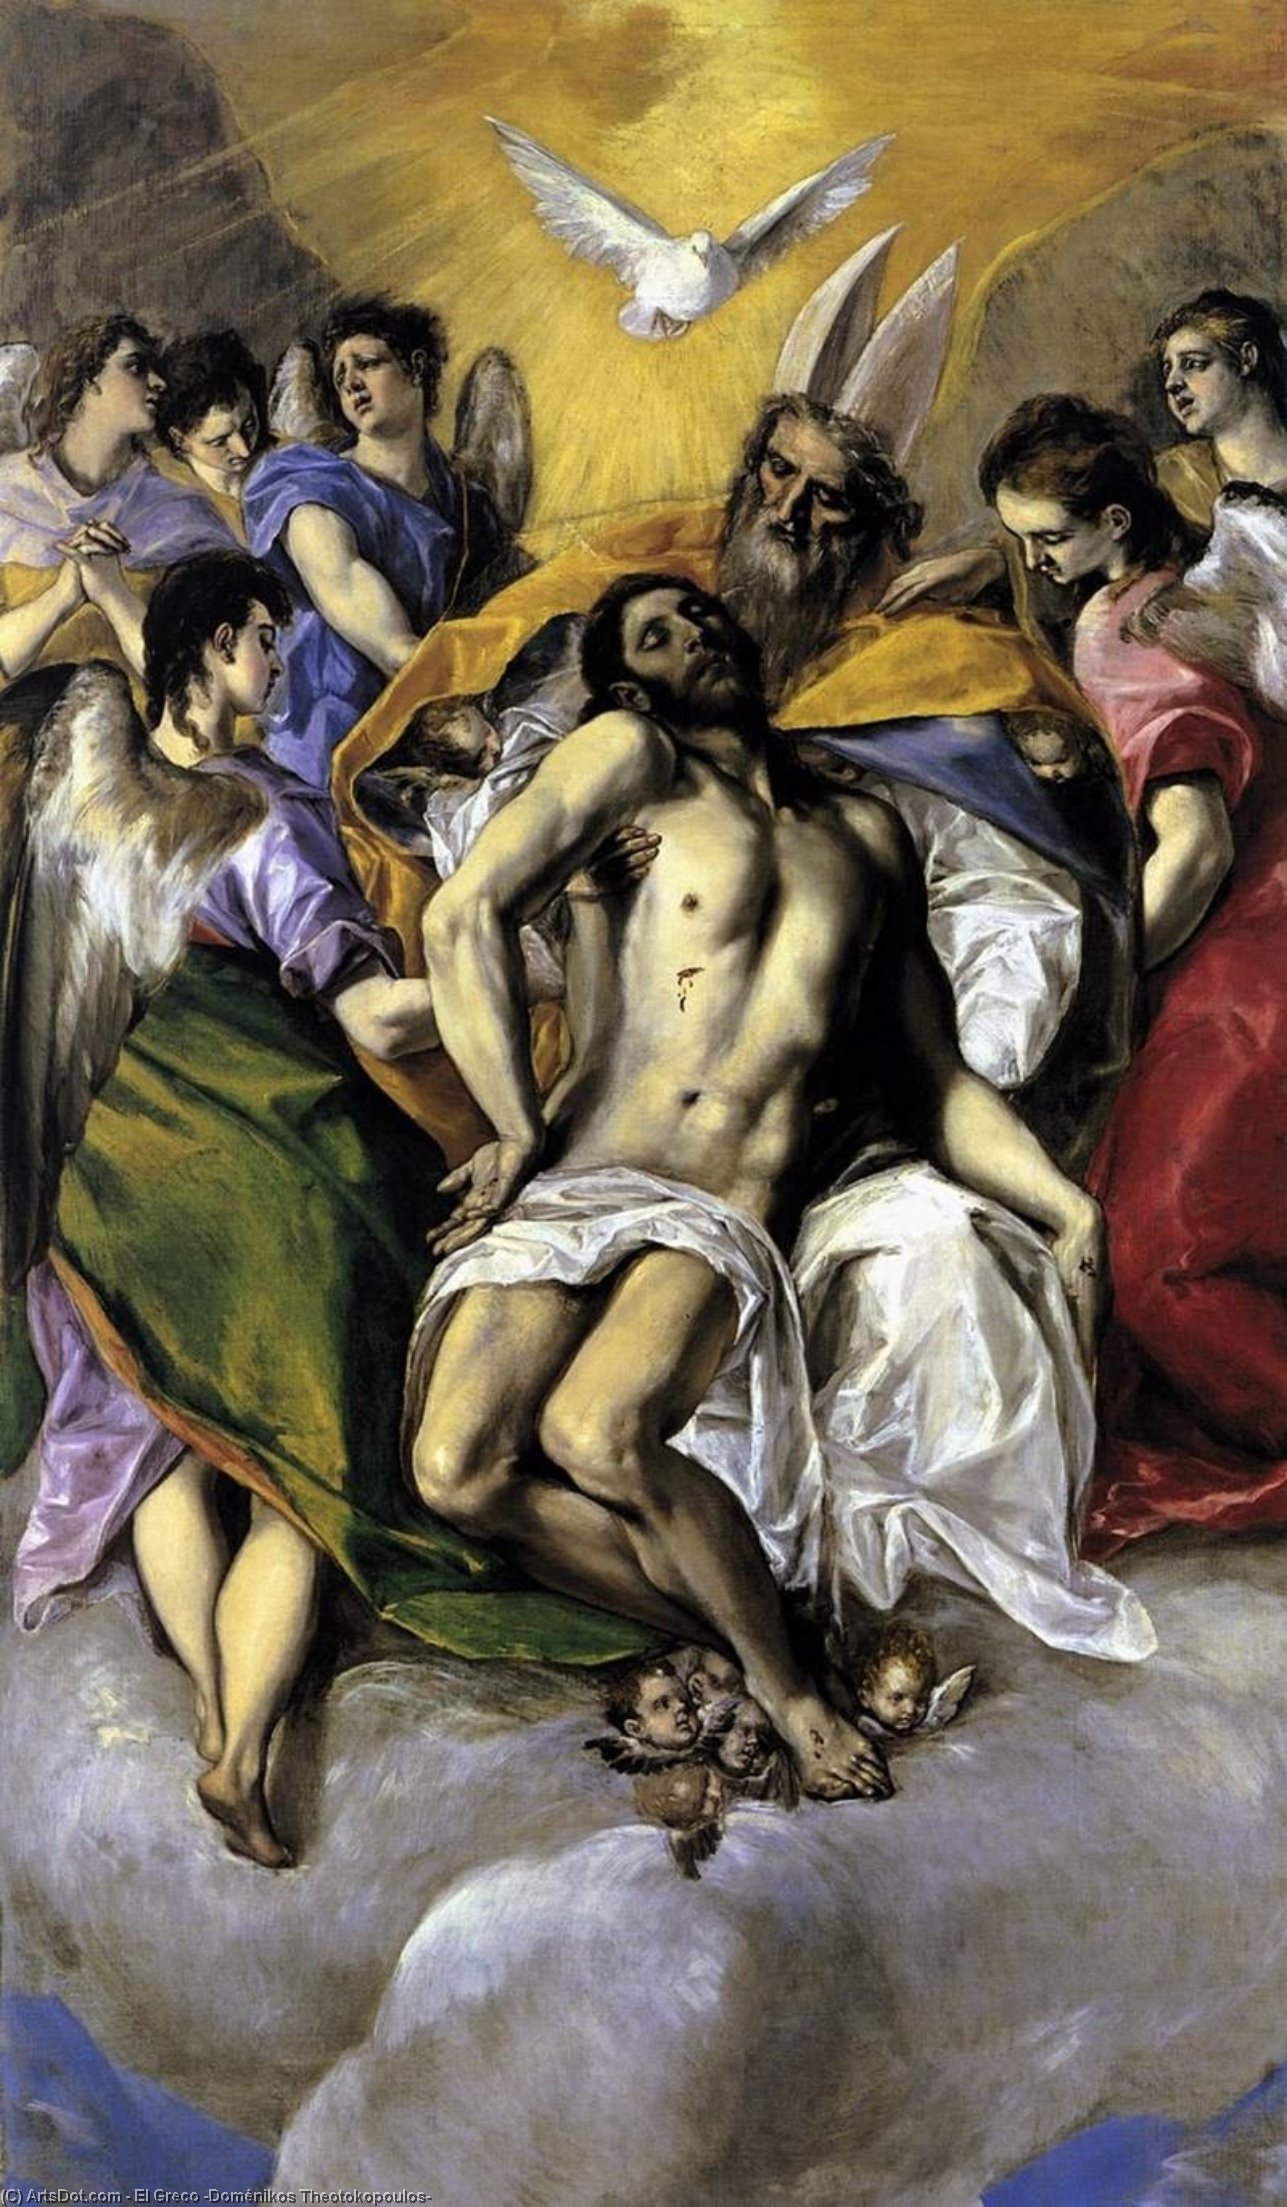 WikiOO.org - Encyclopedia of Fine Arts - Malba, Artwork El Greco (Doménikos Theotokopoulos) - The Trinity